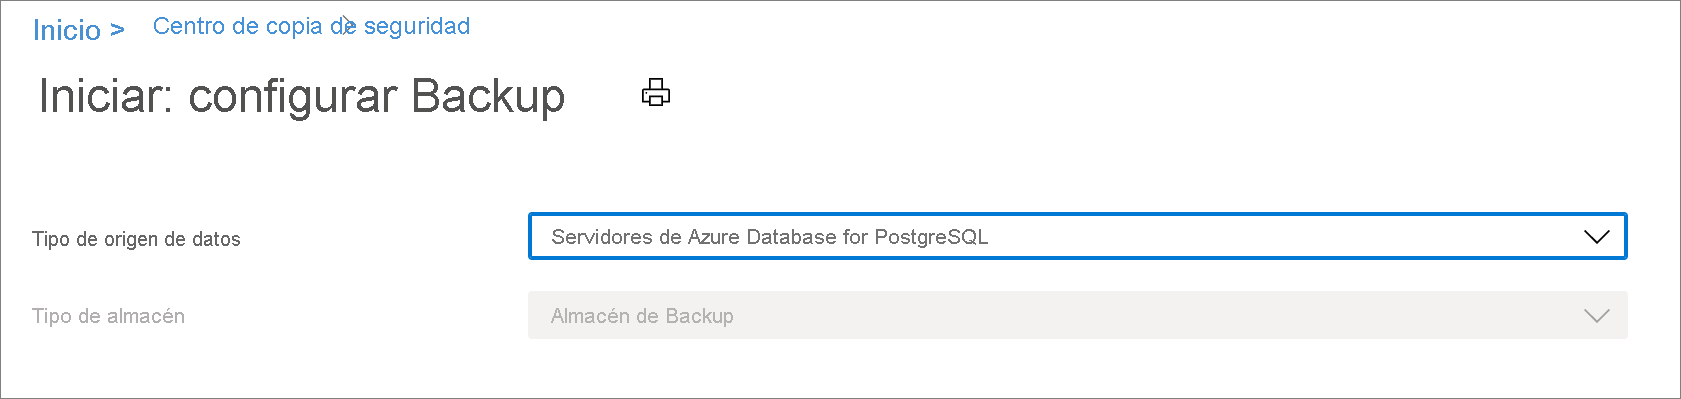 Seleccione el origen de datos para configurar la copia de seguridad del servidor de Azure Database for PostgreSQL.